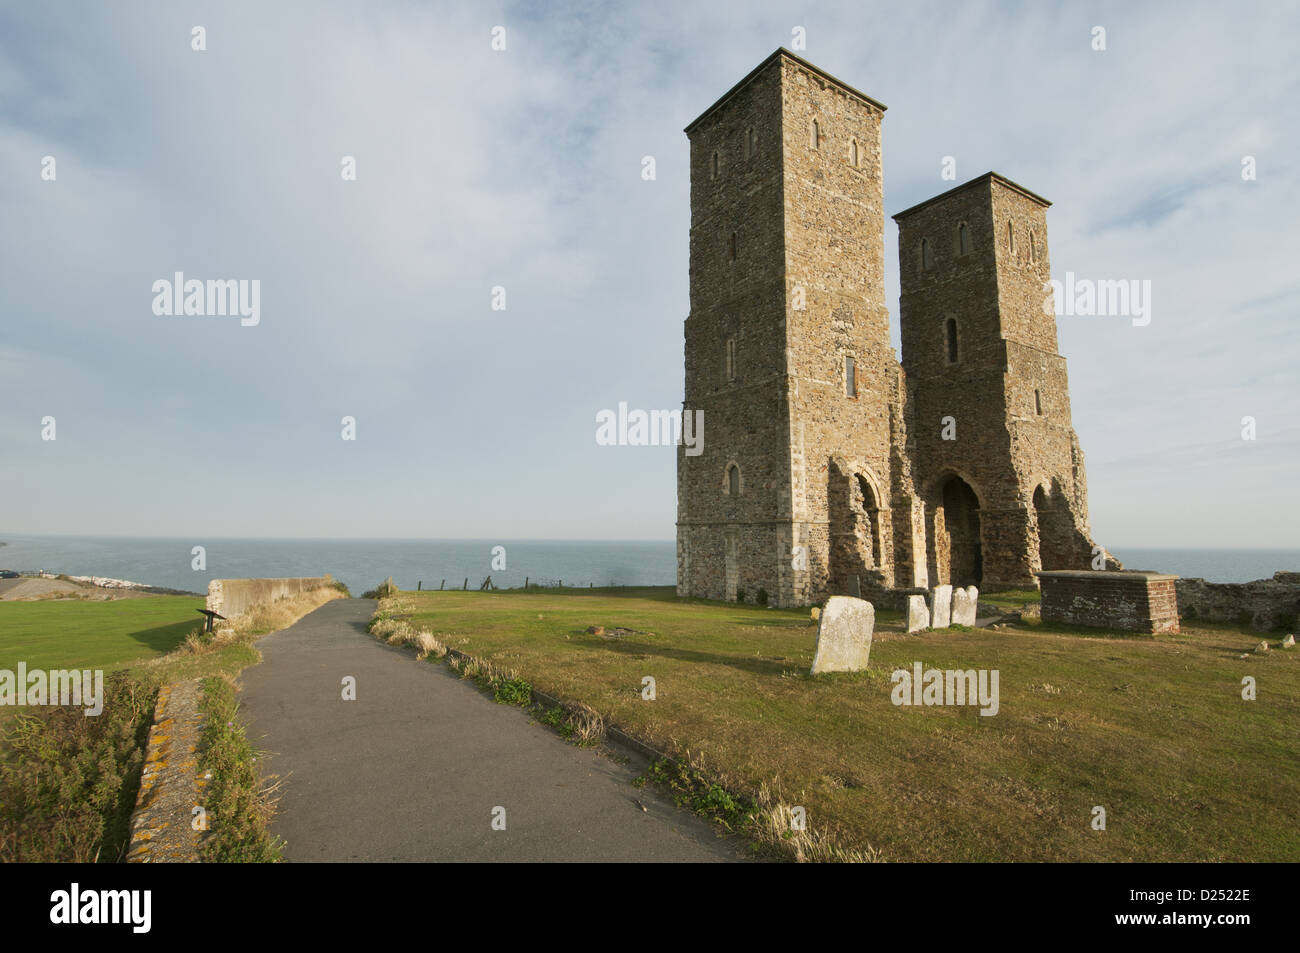 Vista de la iglesia en ruinas del siglo XII y la costa, la Iglesia de Santa María, Reculver, Kent, Inglaterra, Agosto Foto de stock